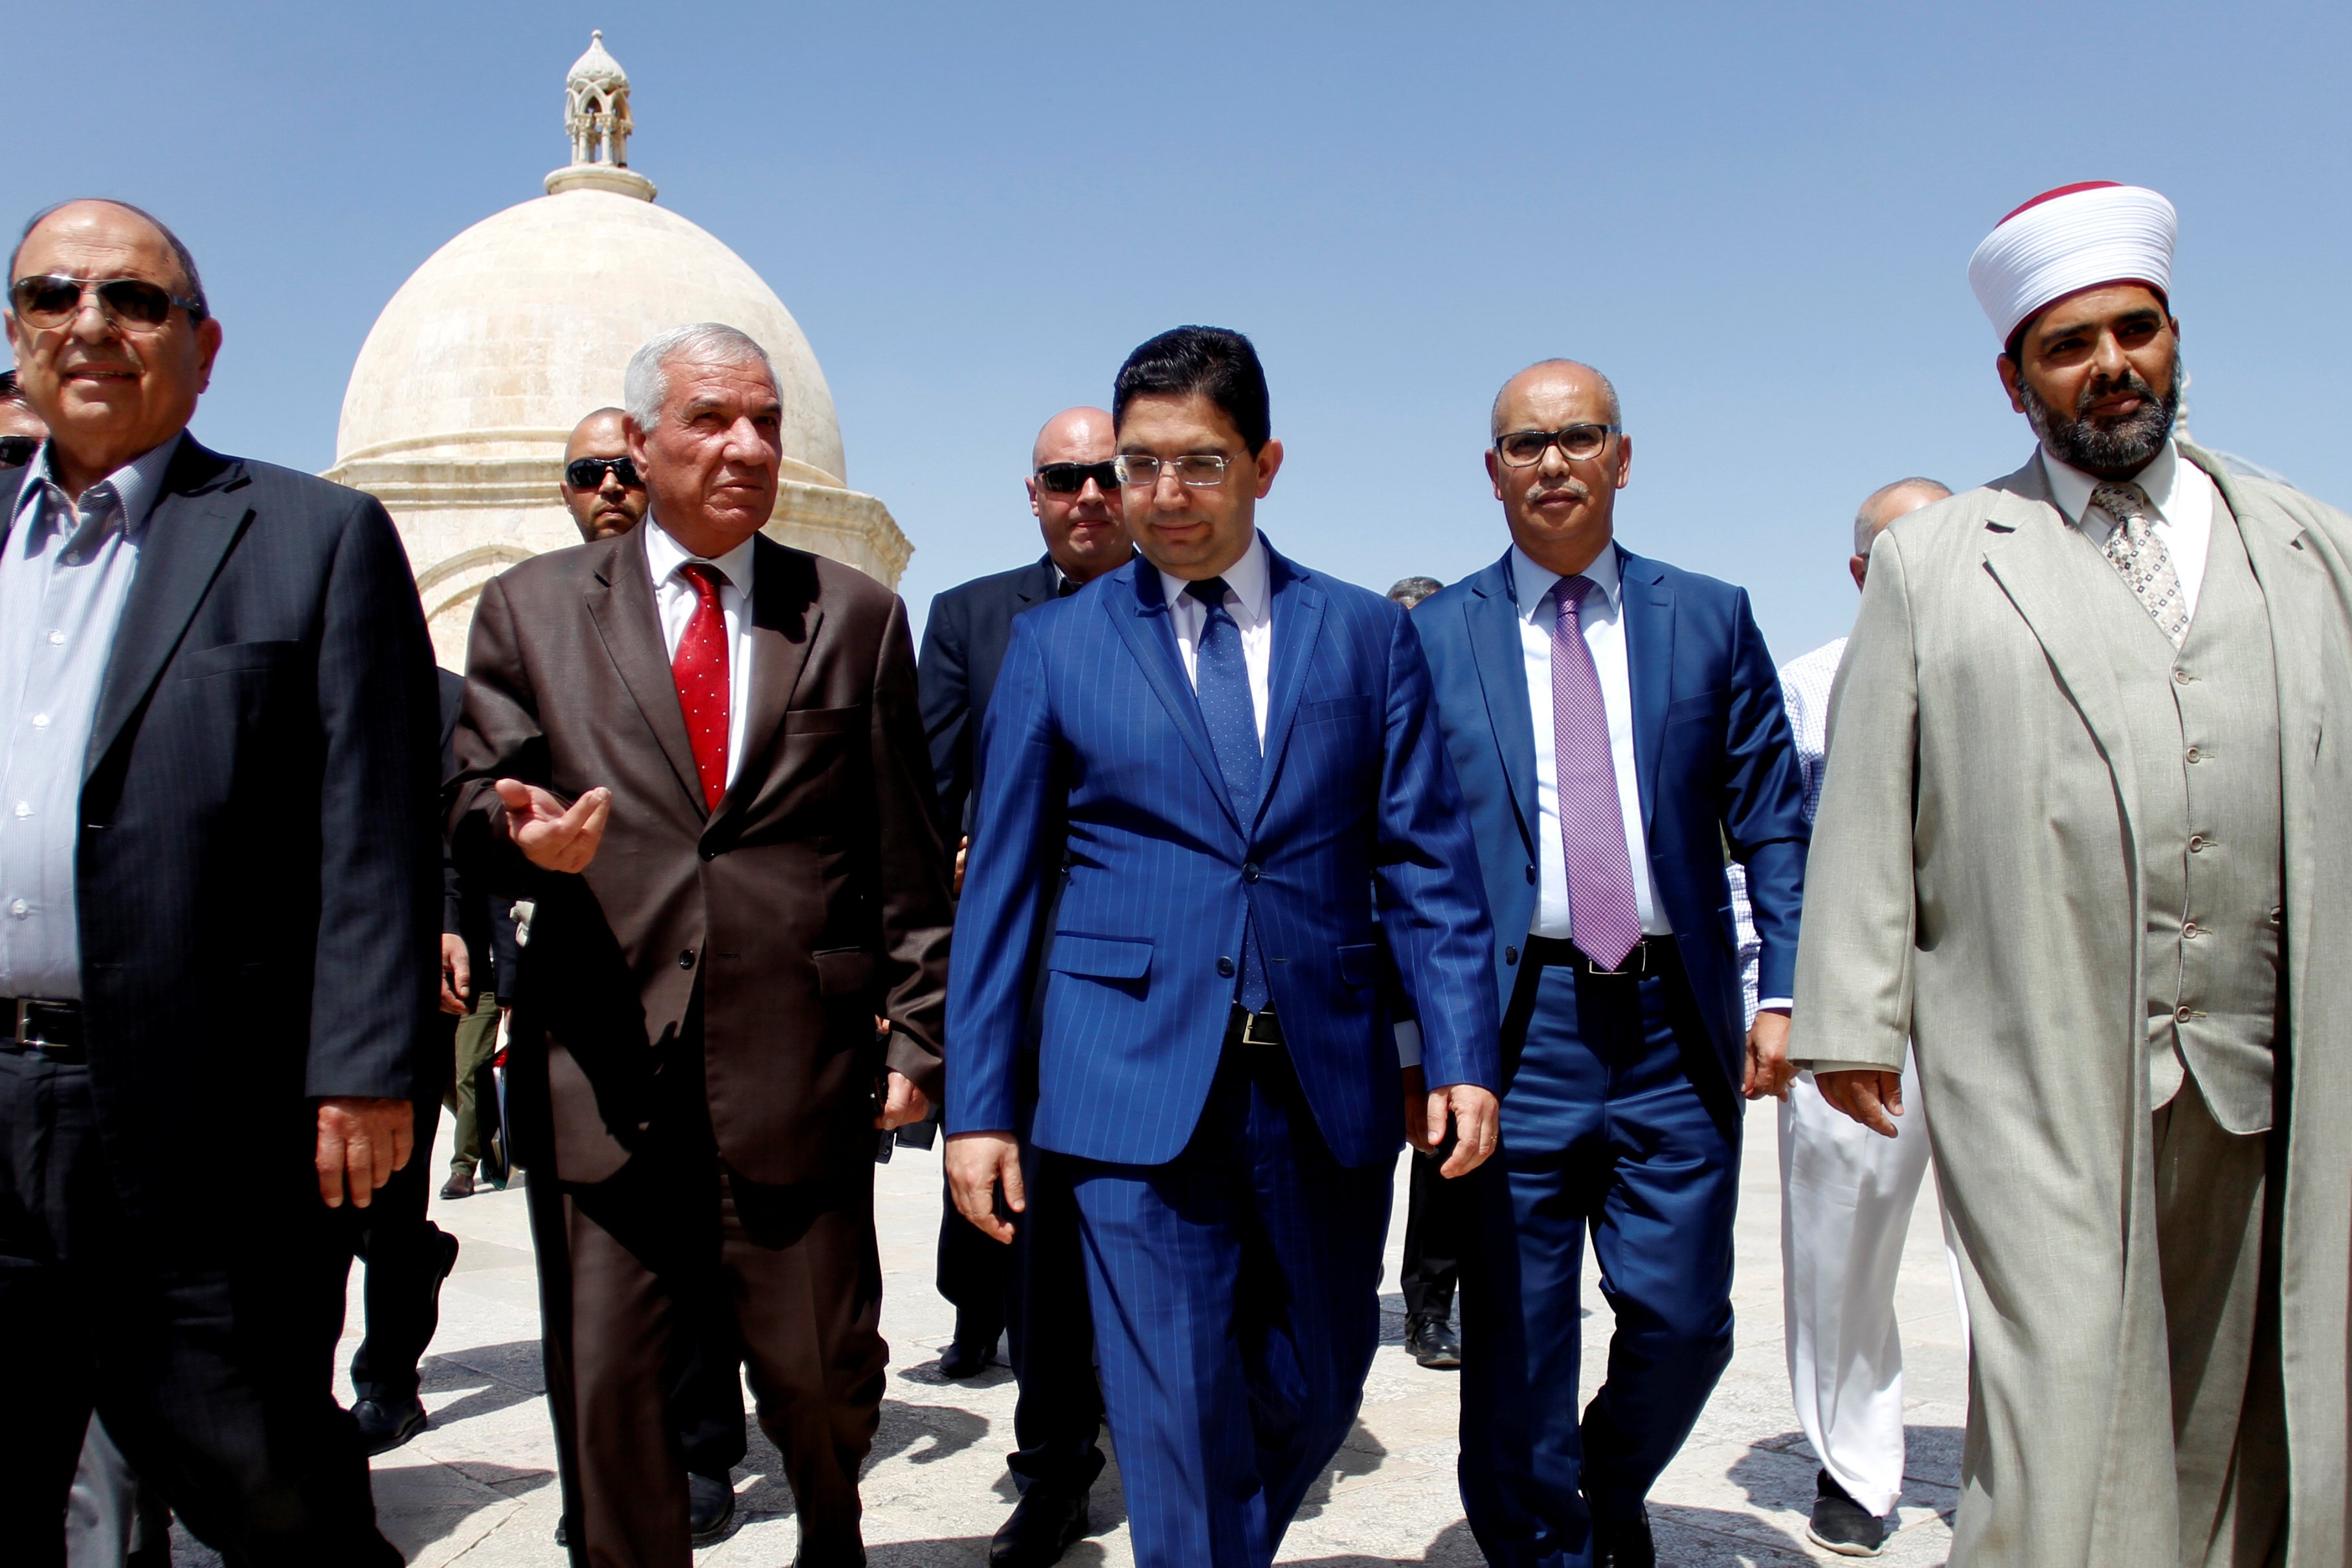 وزير الخارجية والتعاون الدولى المغربى يزور المسجد الأقصى